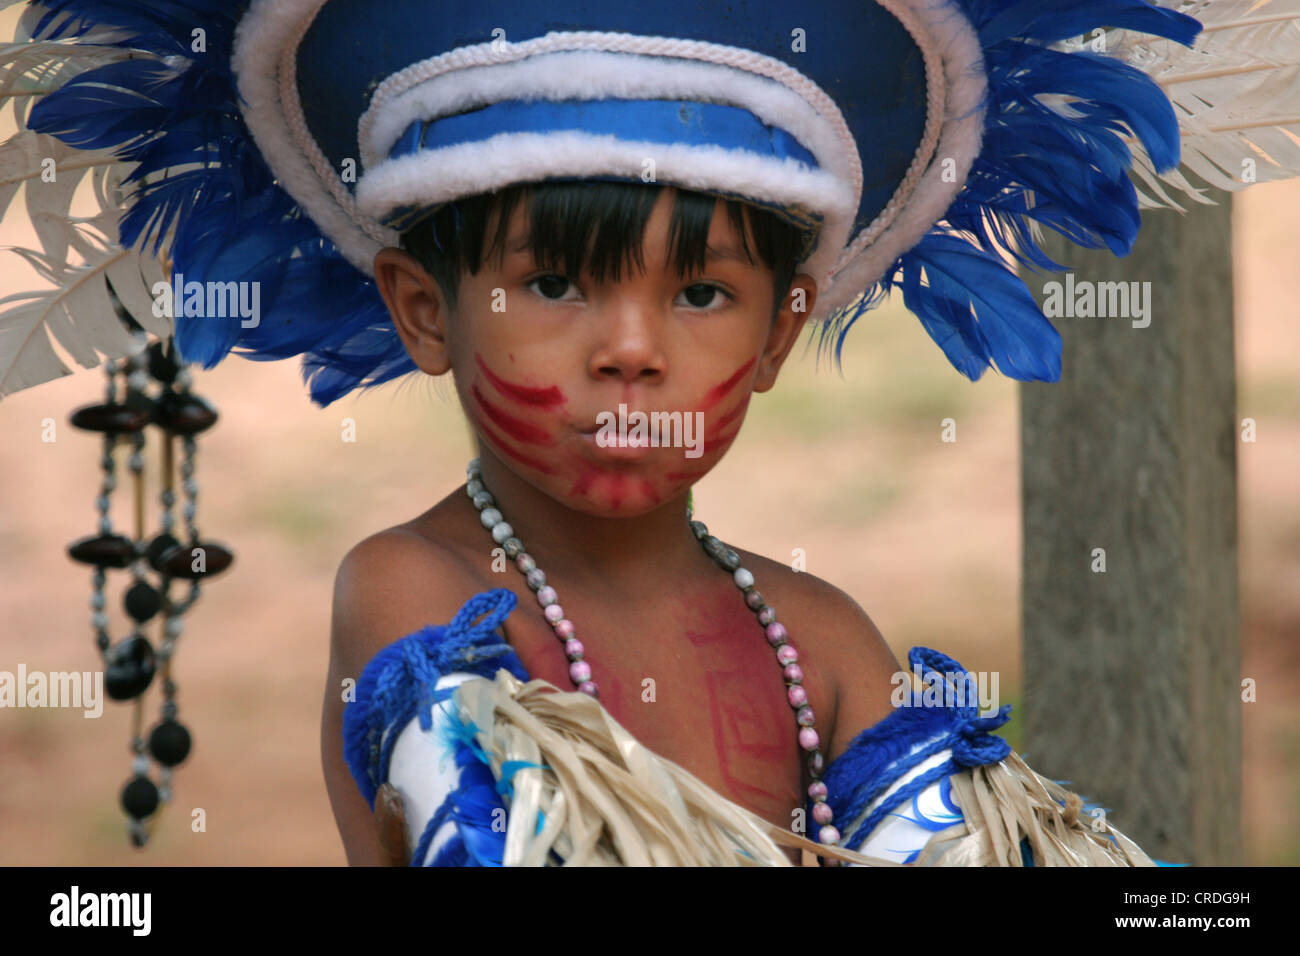 Ragazzo giovane vestito in nativo tipico abito cerimoniale dalla regione amazzonica del Brasile Foto Stock